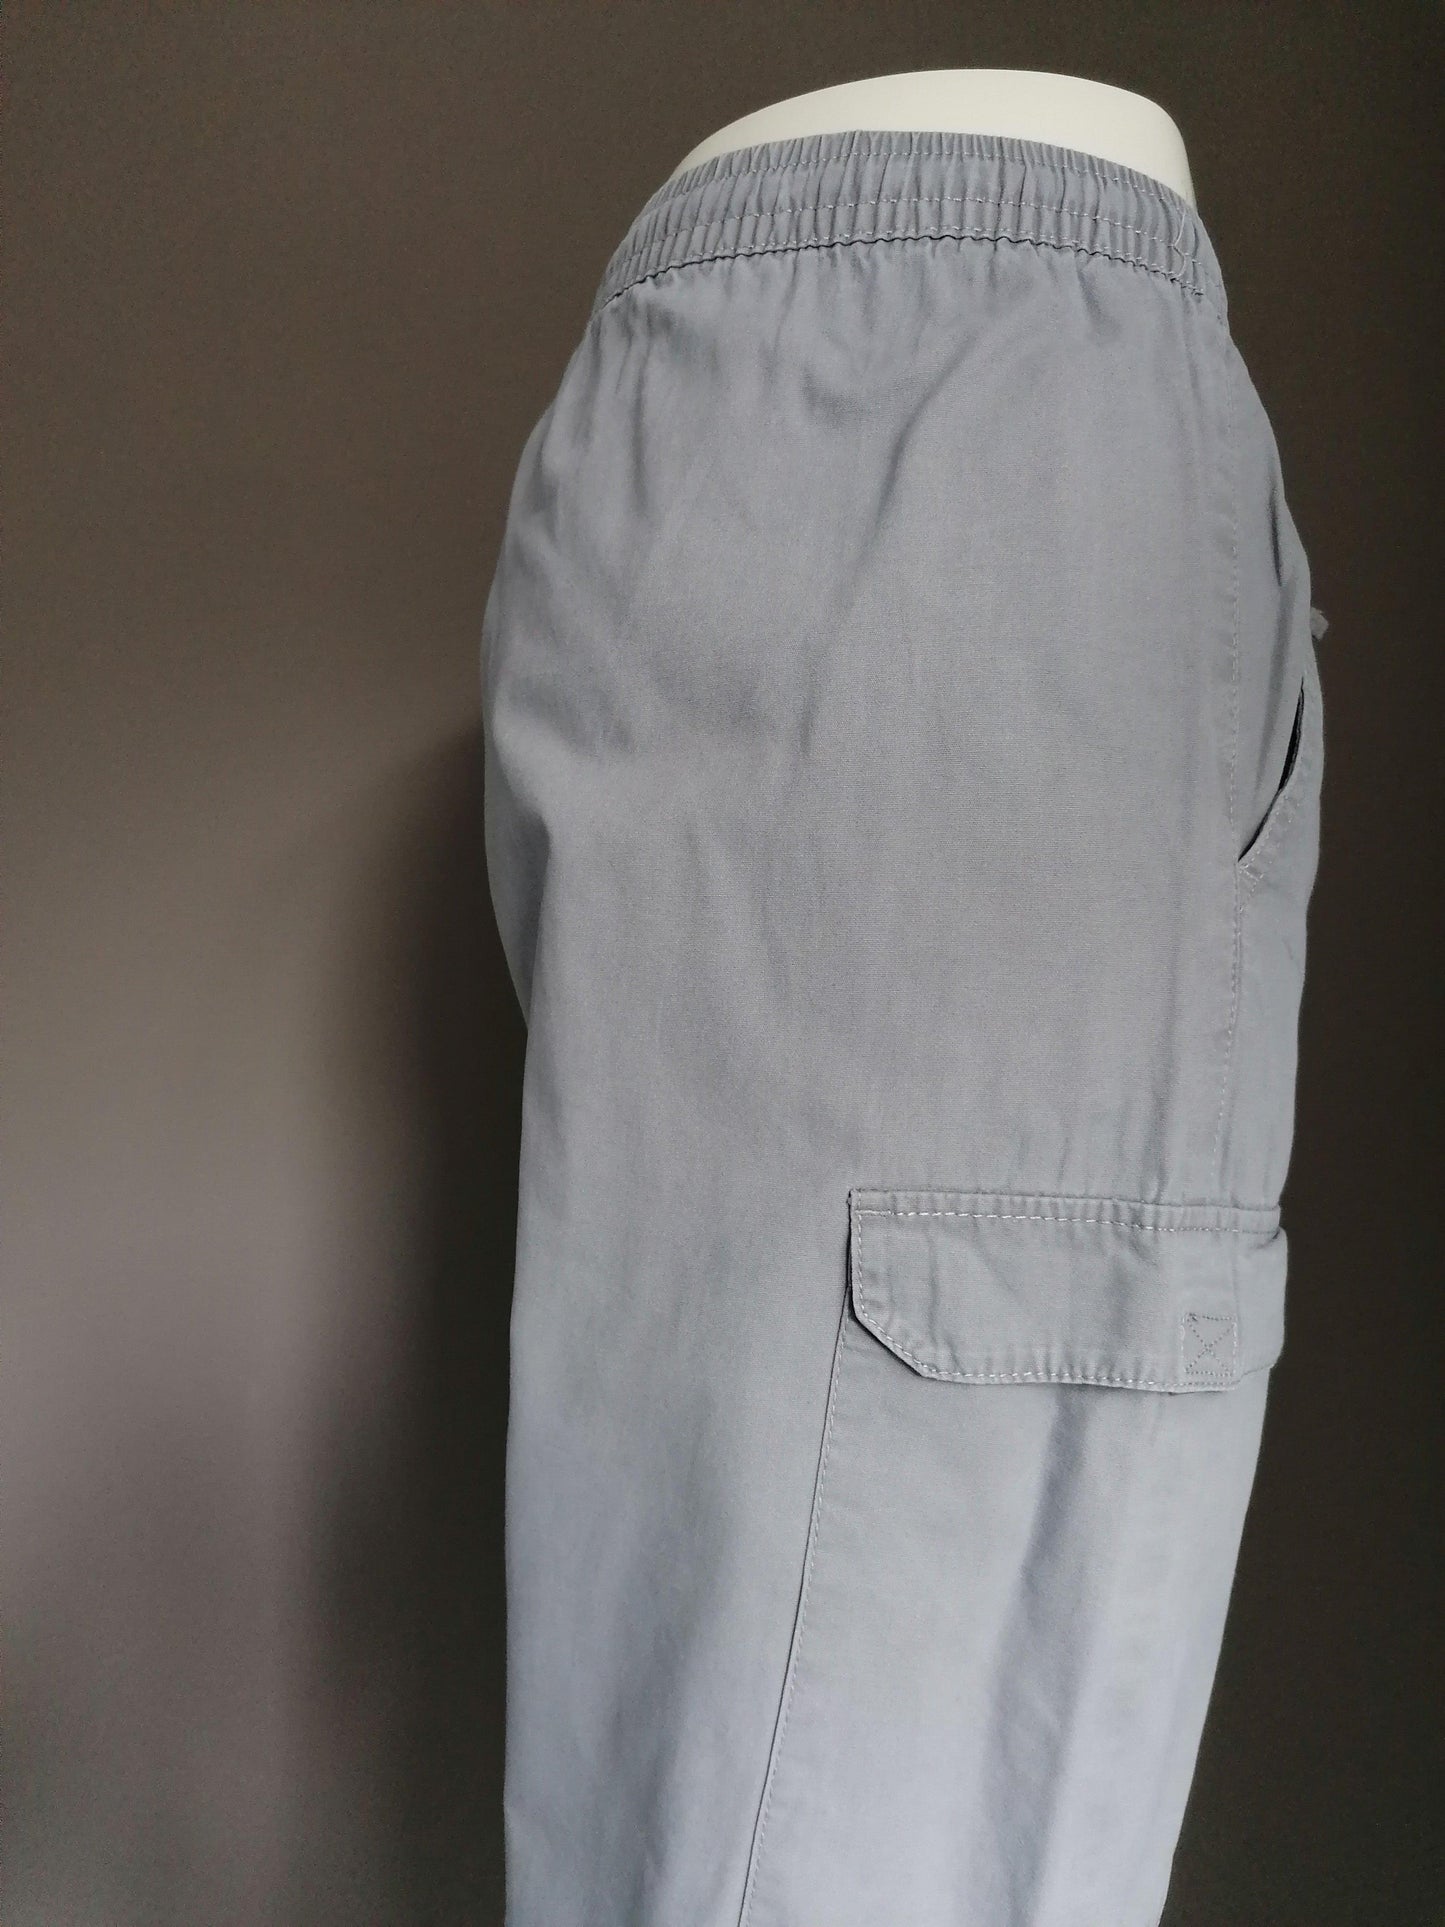 Atlas for Men broek met zakken aan de zijkant en elastische band. Grijs gekleurd. Maat XXXL / 3XL. - EcoGents